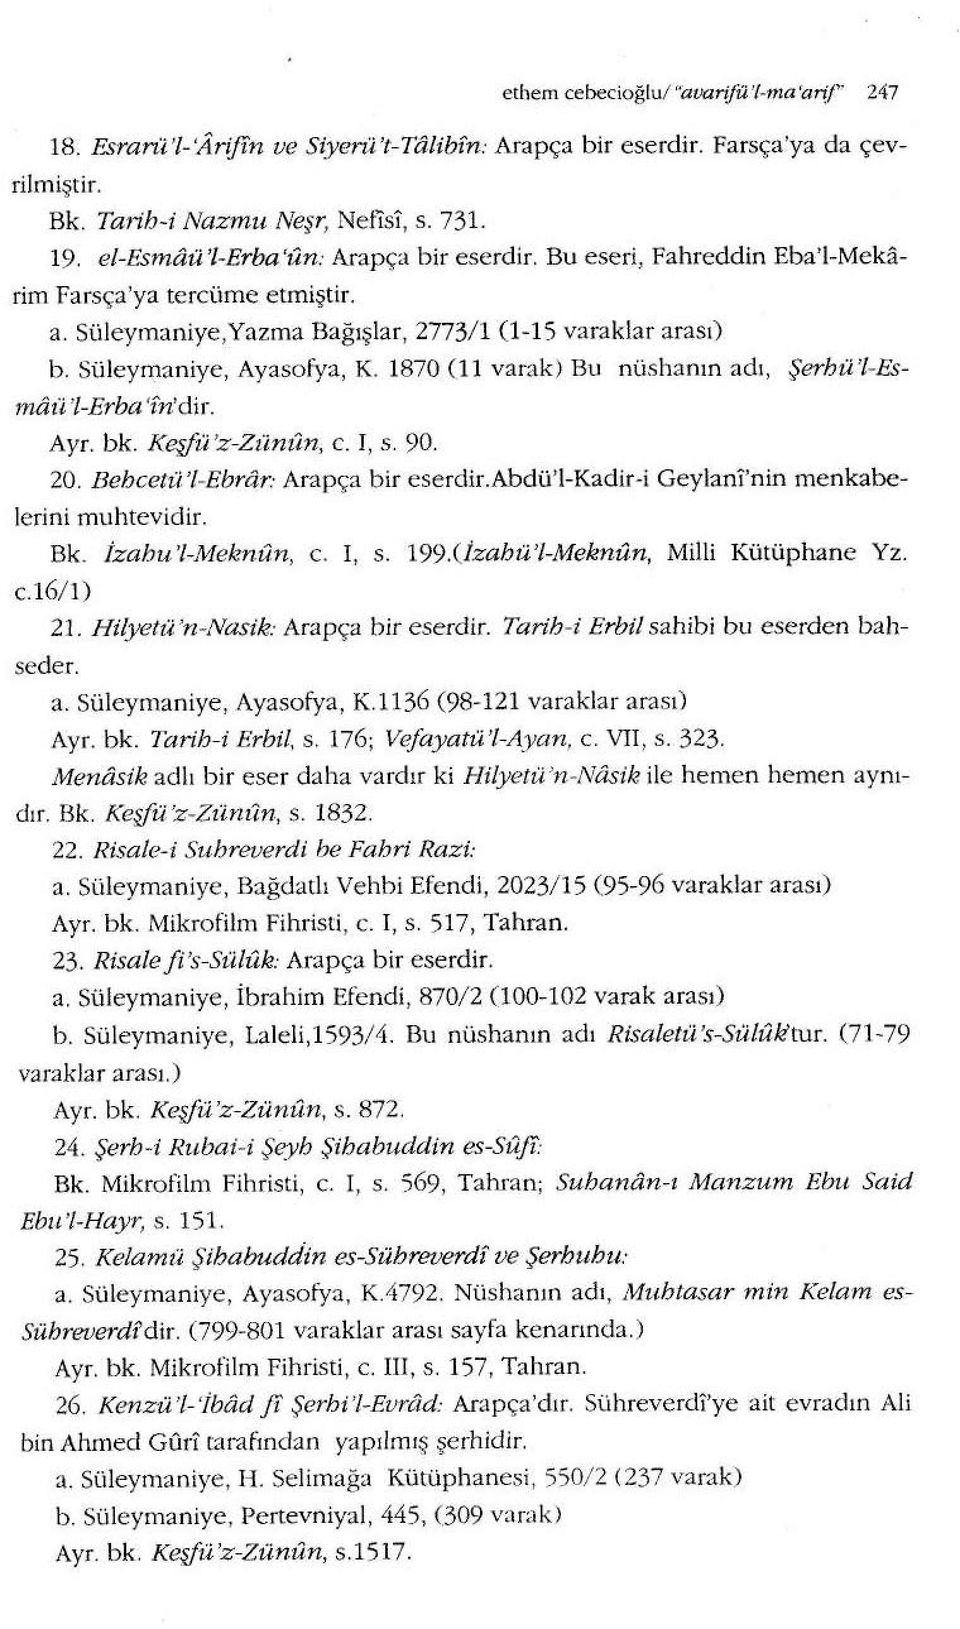 1870 (11 va rak) Bu nüshan ın adı, Şerhü '/-Esmaa 'l-erba 'fn'dir. Ayr. bk. Keşfü'z-Zünıln, c. I, s. 90. 20. Behcetü'l-Ebrar: Arapça bir eserdir.abdü'l-kadir-i Geylani'nin menkabelerini muhtevidir.